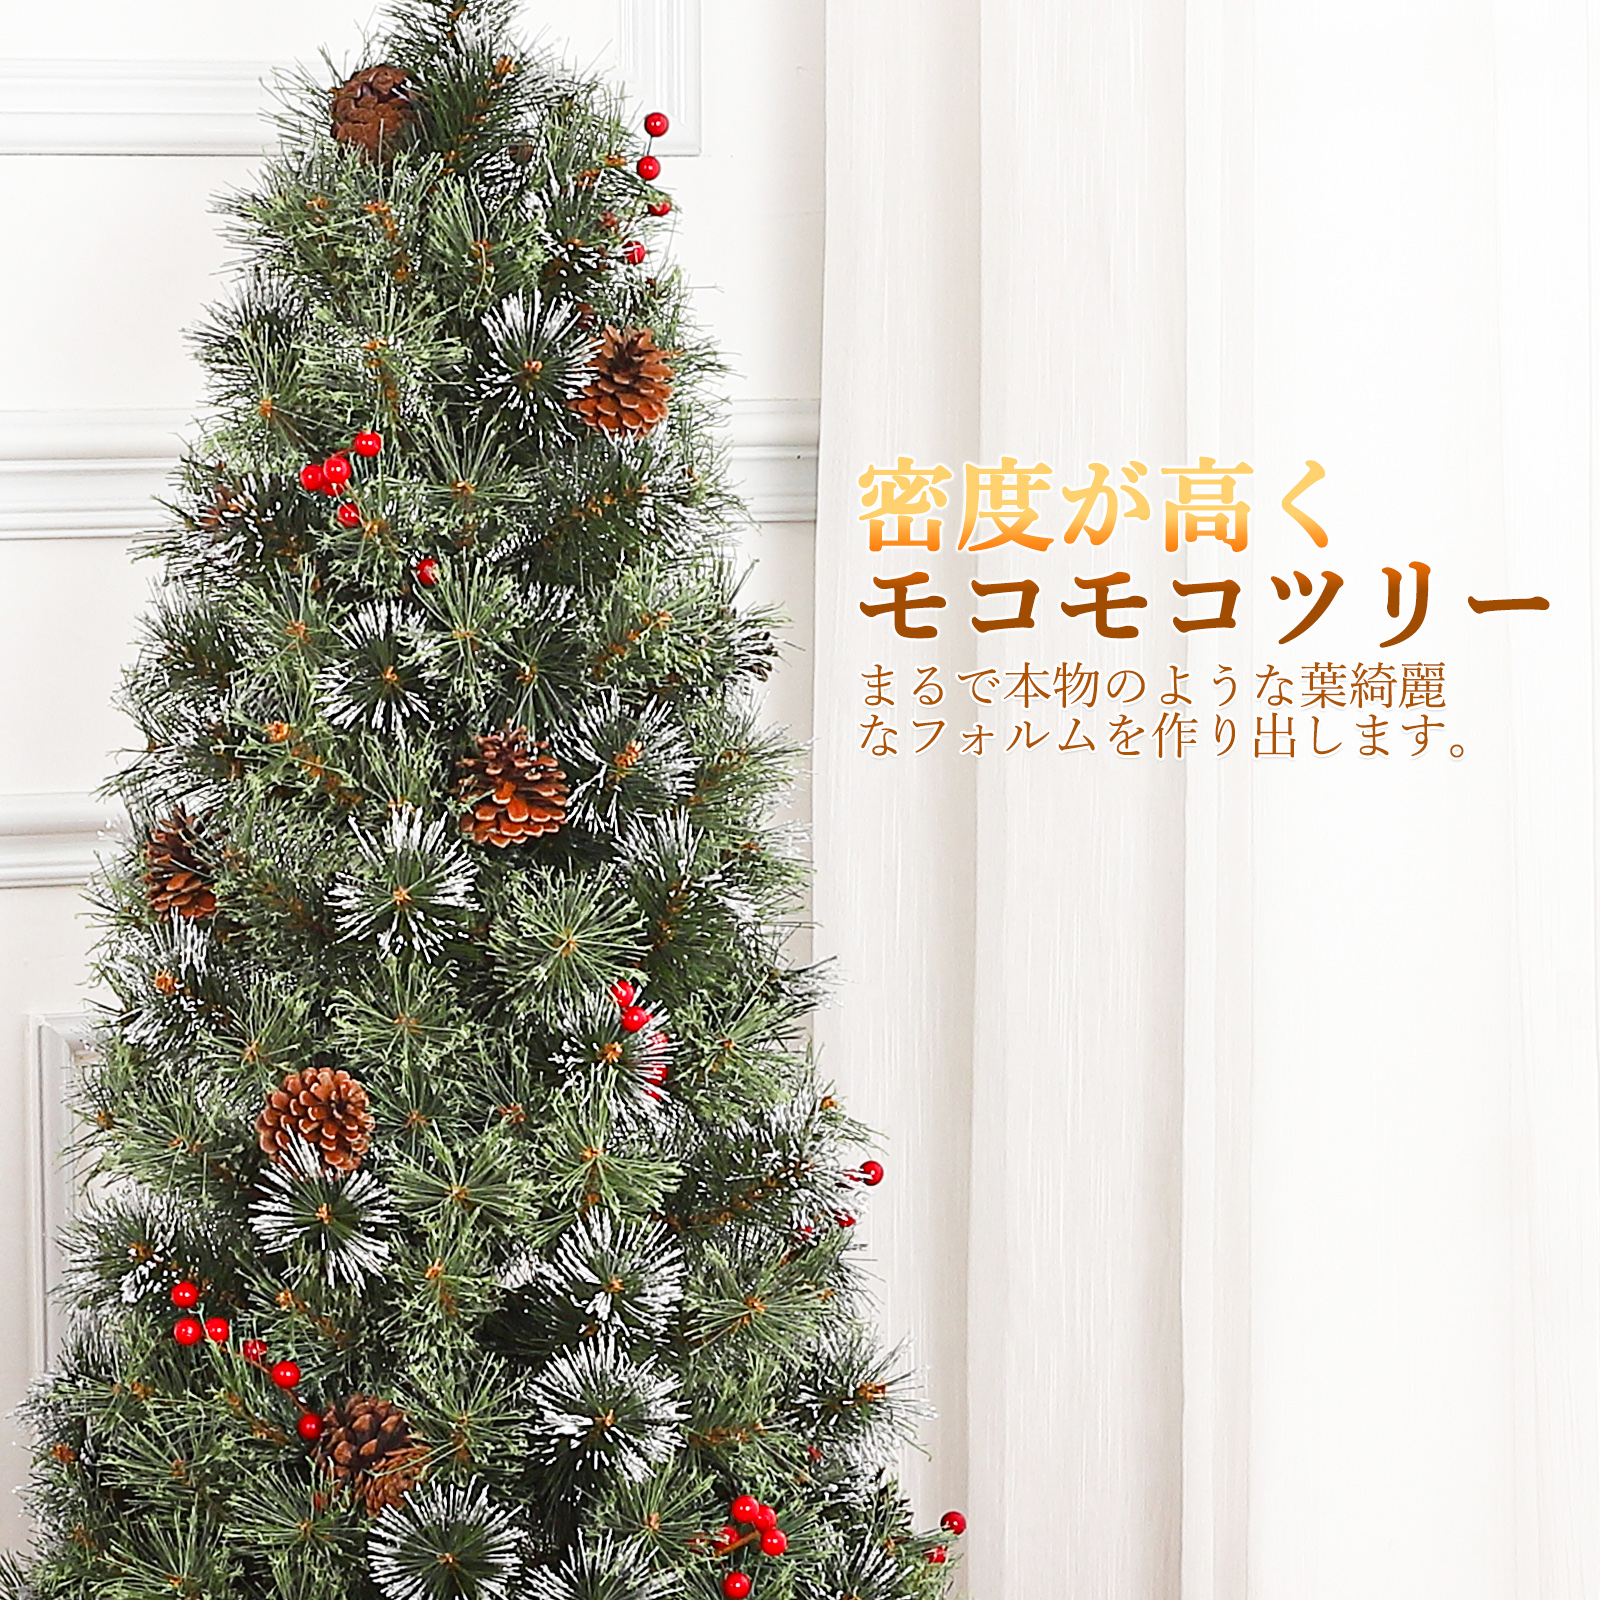 Litake クリスマスツリー 北欧 おしゃれ ヌードツリー 150cm